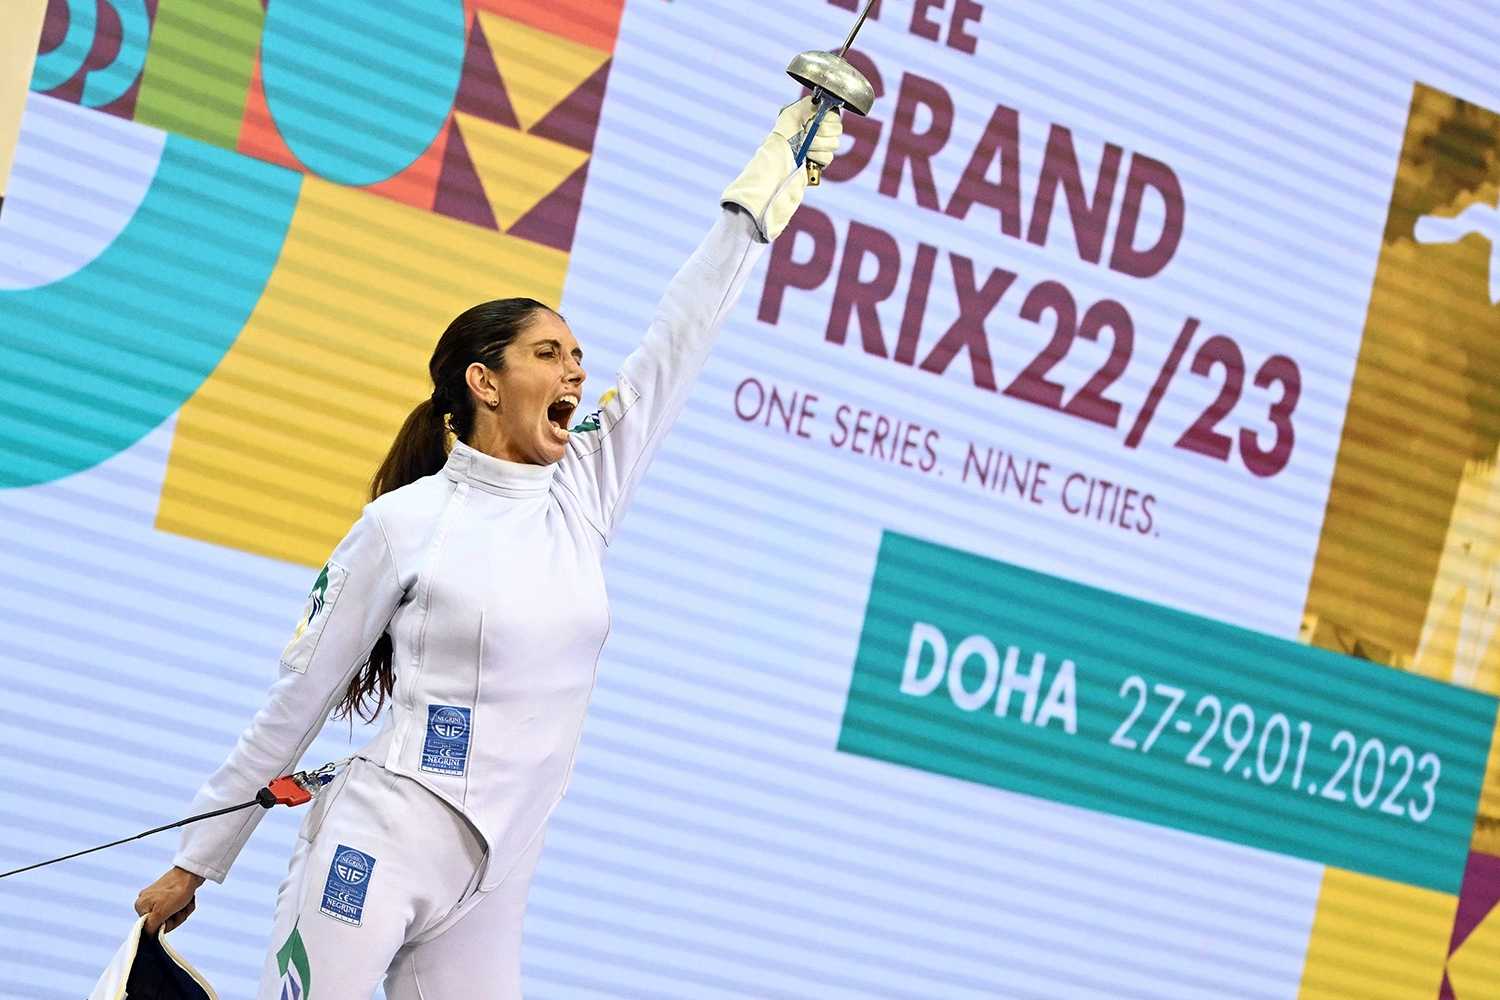 A CAMPEÃ VOLTOU! Nathalie Moellhausen faz campanha espetacular e conquista invicta o GP de Doha